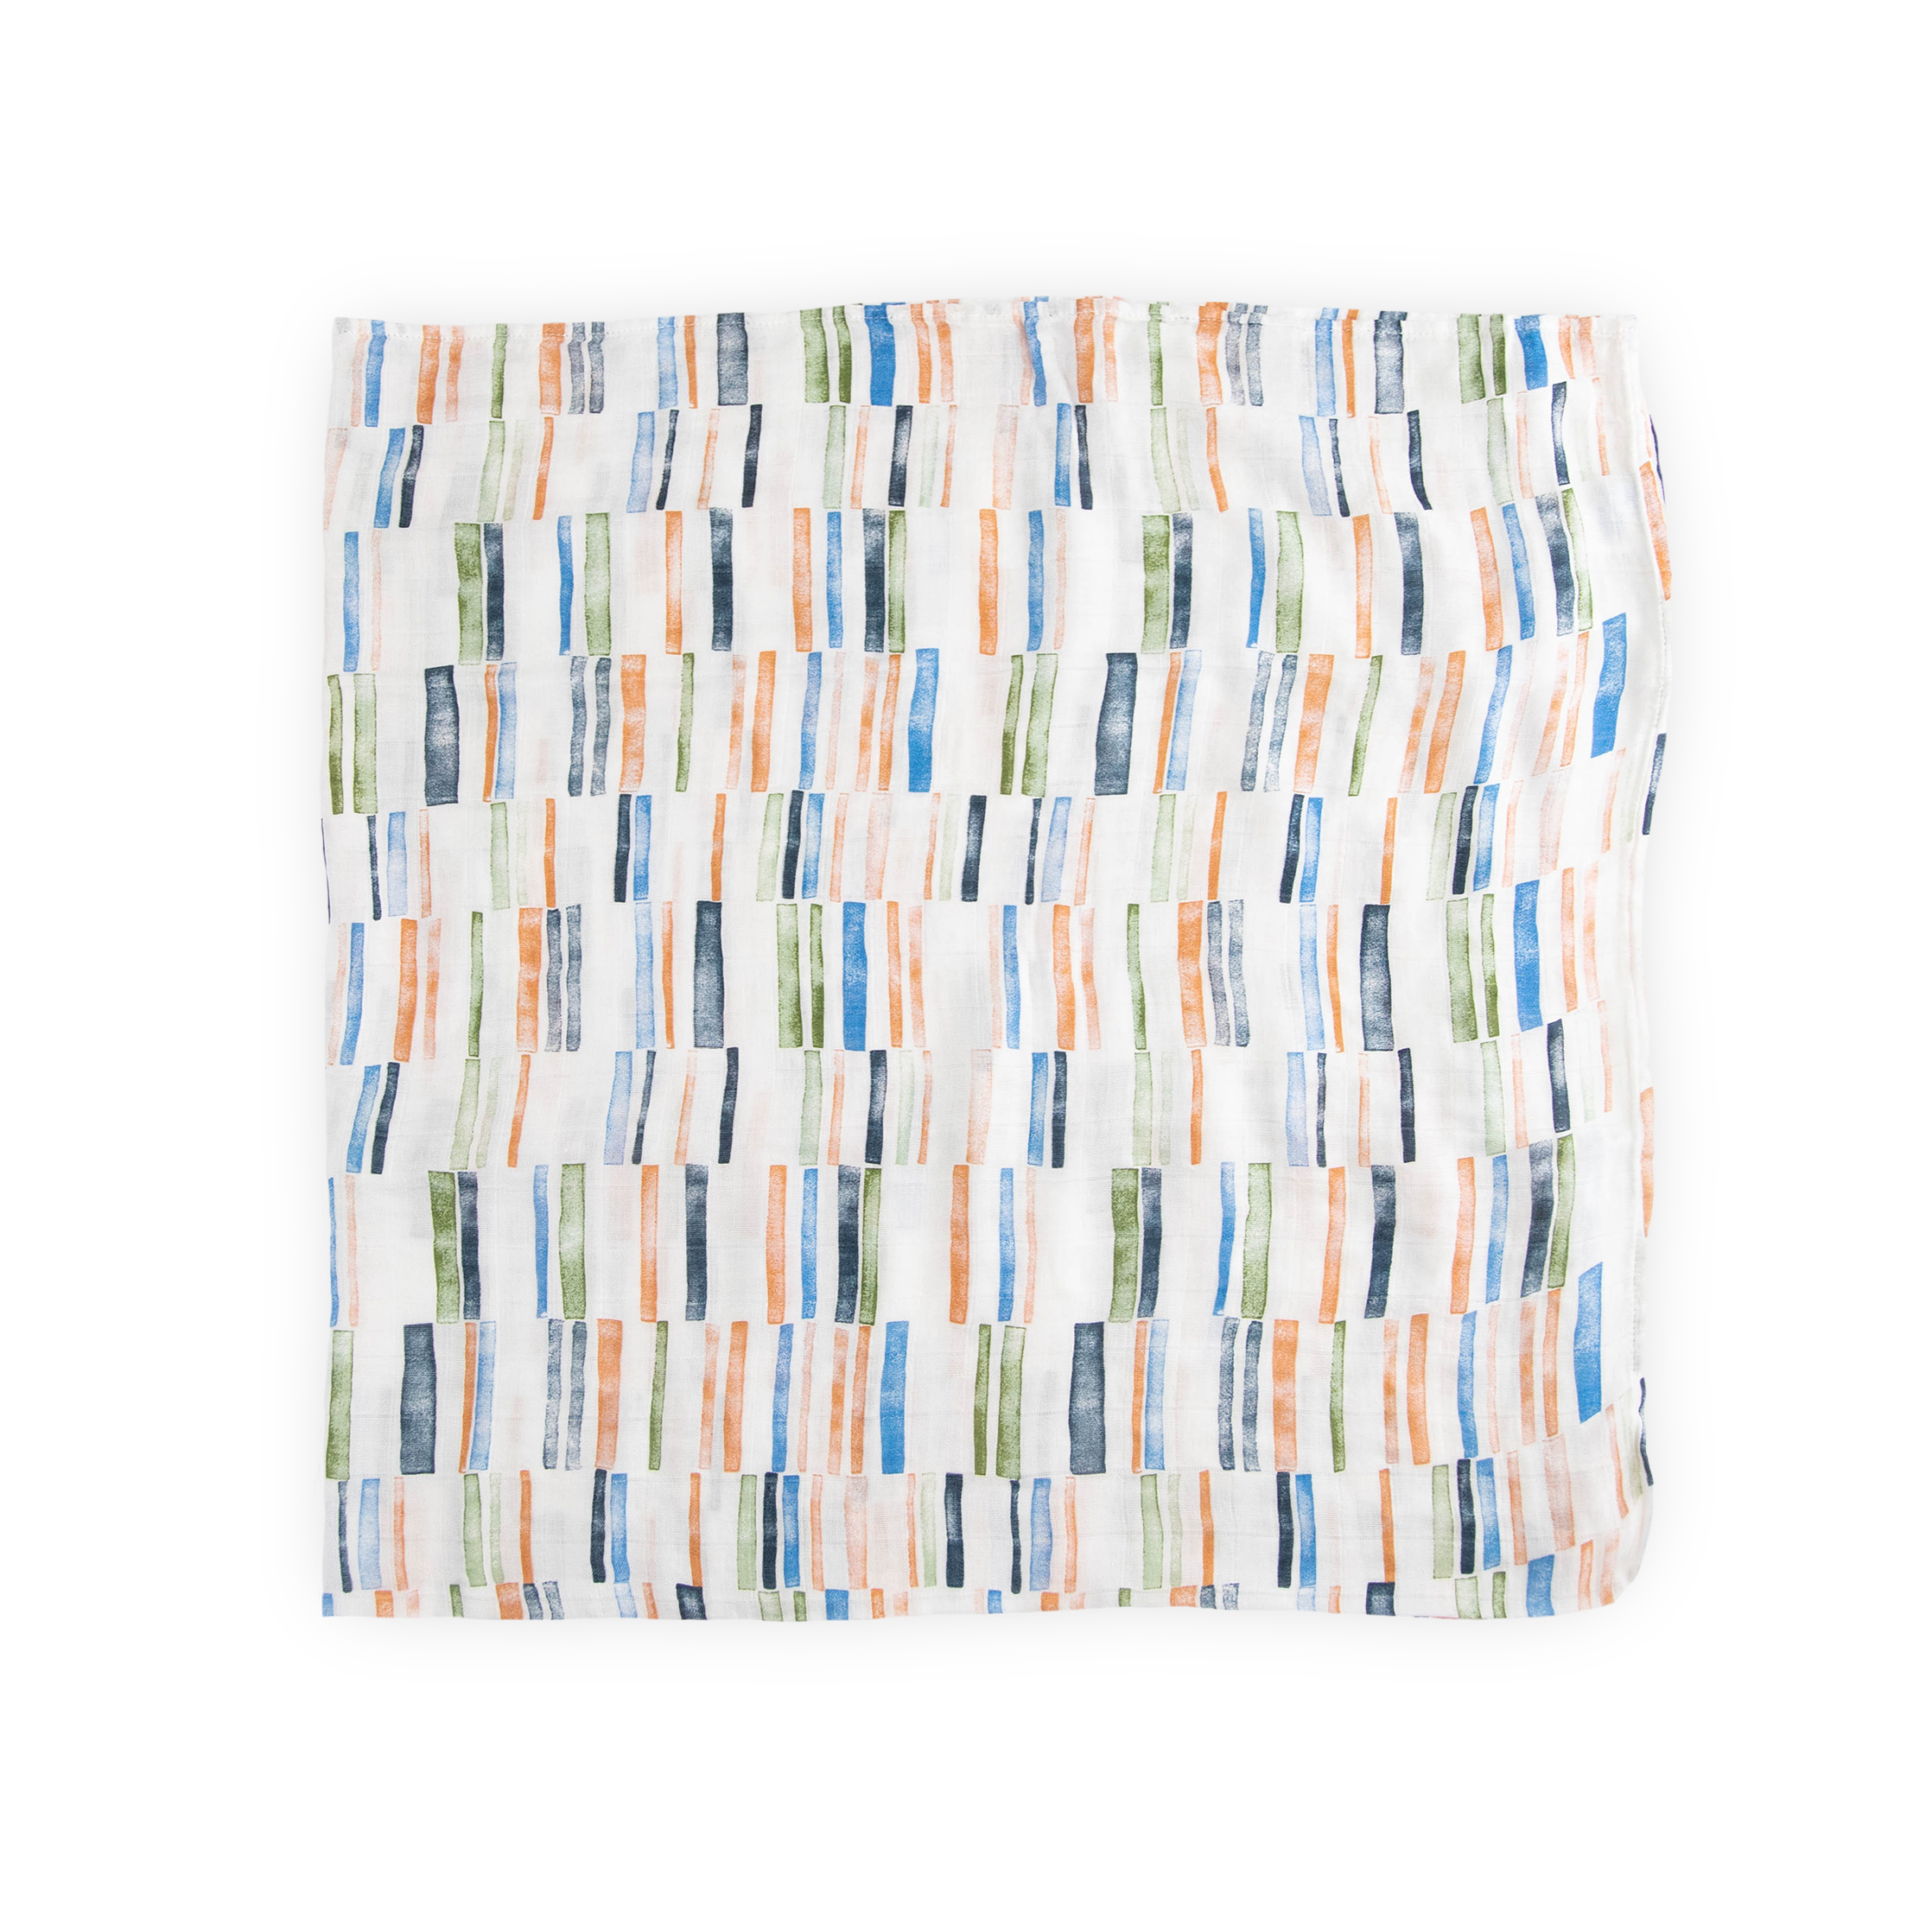 Deluxe Muslin Swaddle Blanket - Weston Stripe